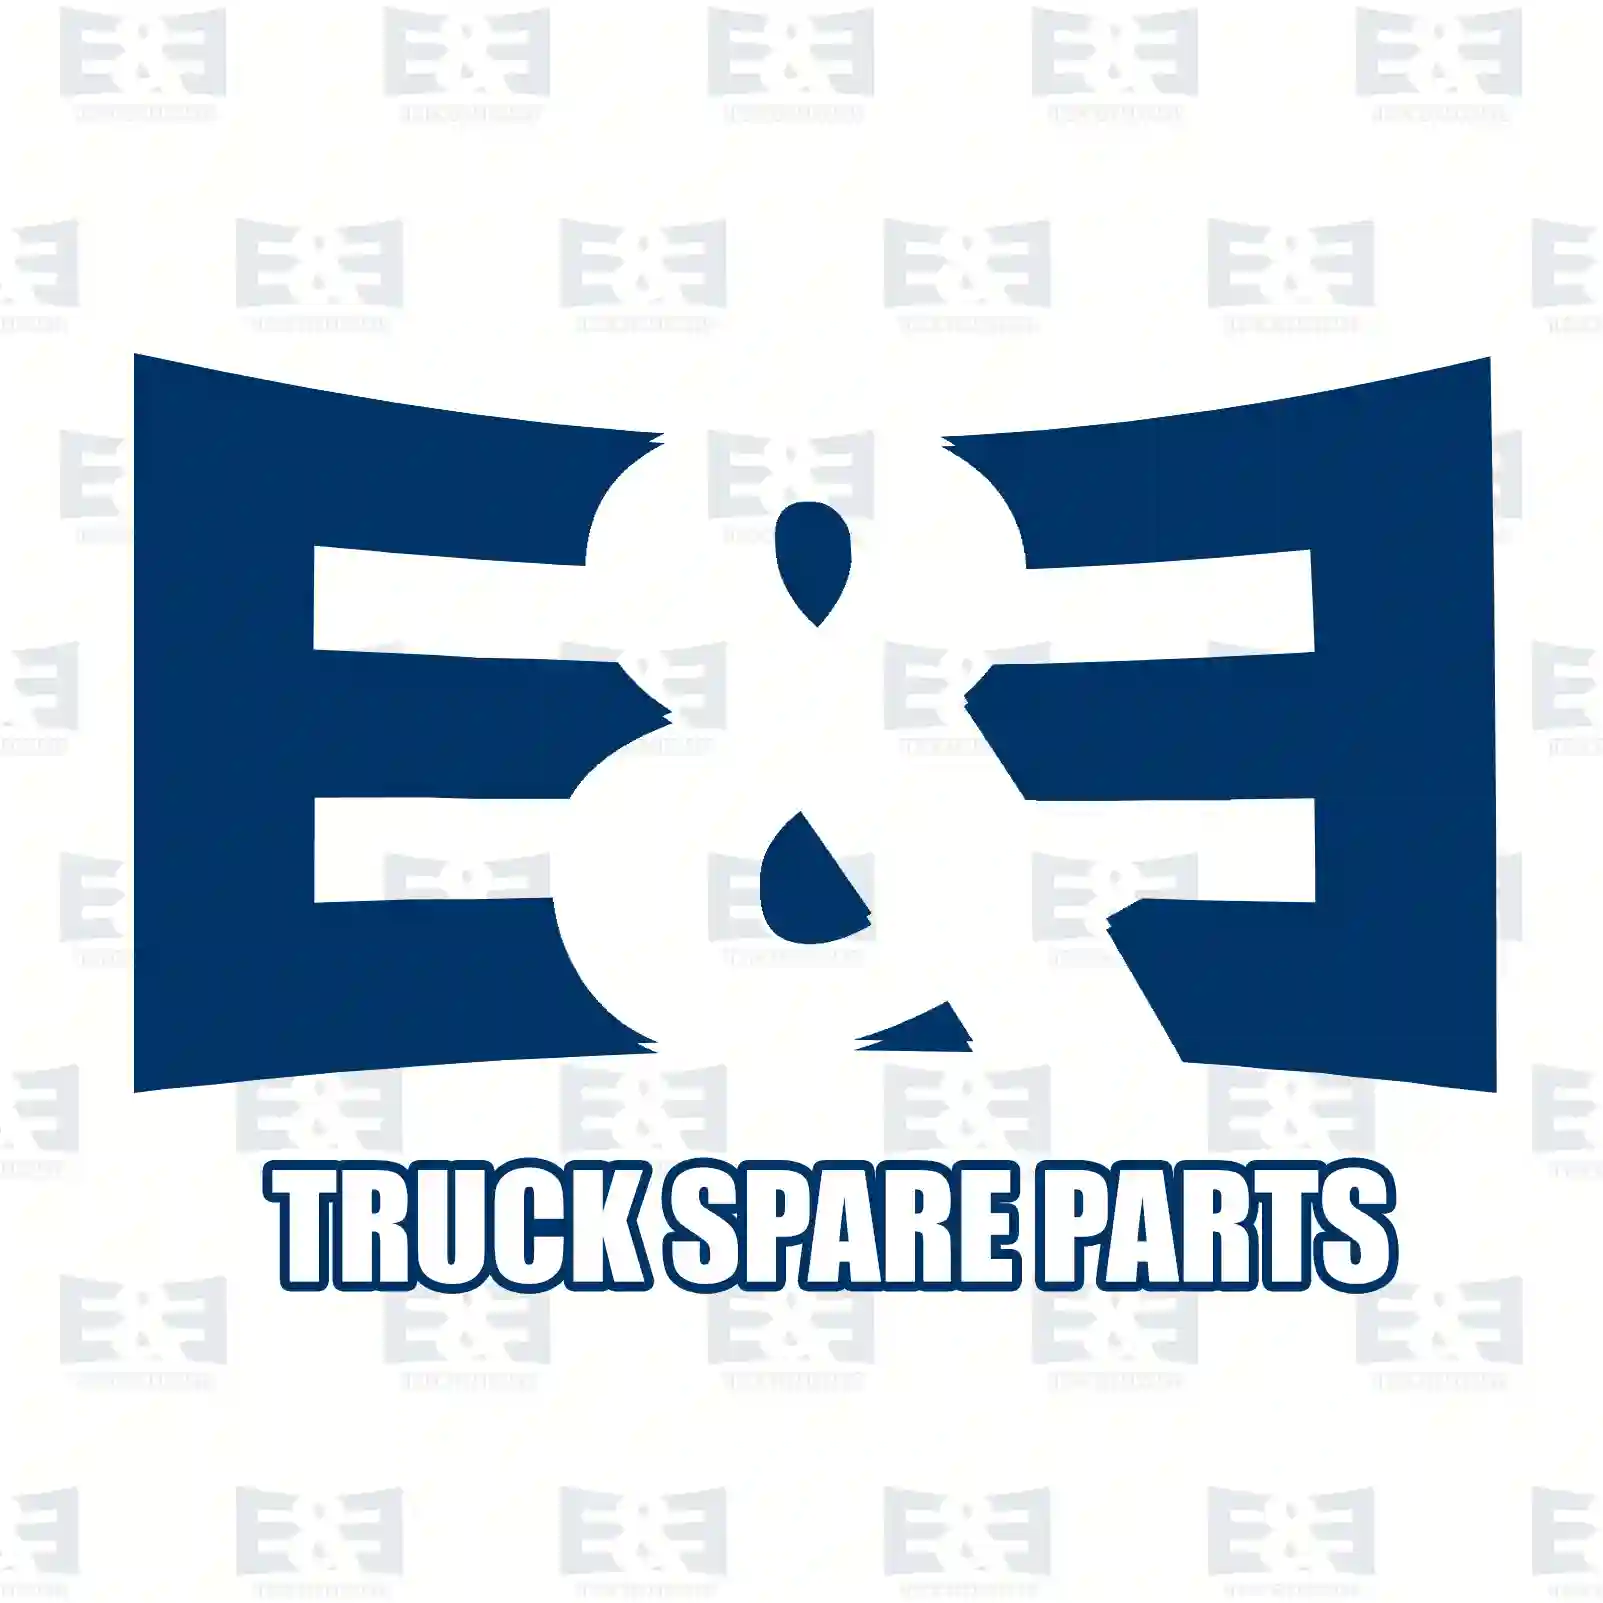 Intercooler, 2E2202207, 10570198, 1747660, 1899859, 570198 ||  2E2202207 E&E Truck Spare Parts | Truck Spare Parts, Auotomotive Spare Parts Intercooler, 2E2202207, 10570198, 1747660, 1899859, 570198 ||  2E2202207 E&E Truck Spare Parts | Truck Spare Parts, Auotomotive Spare Parts